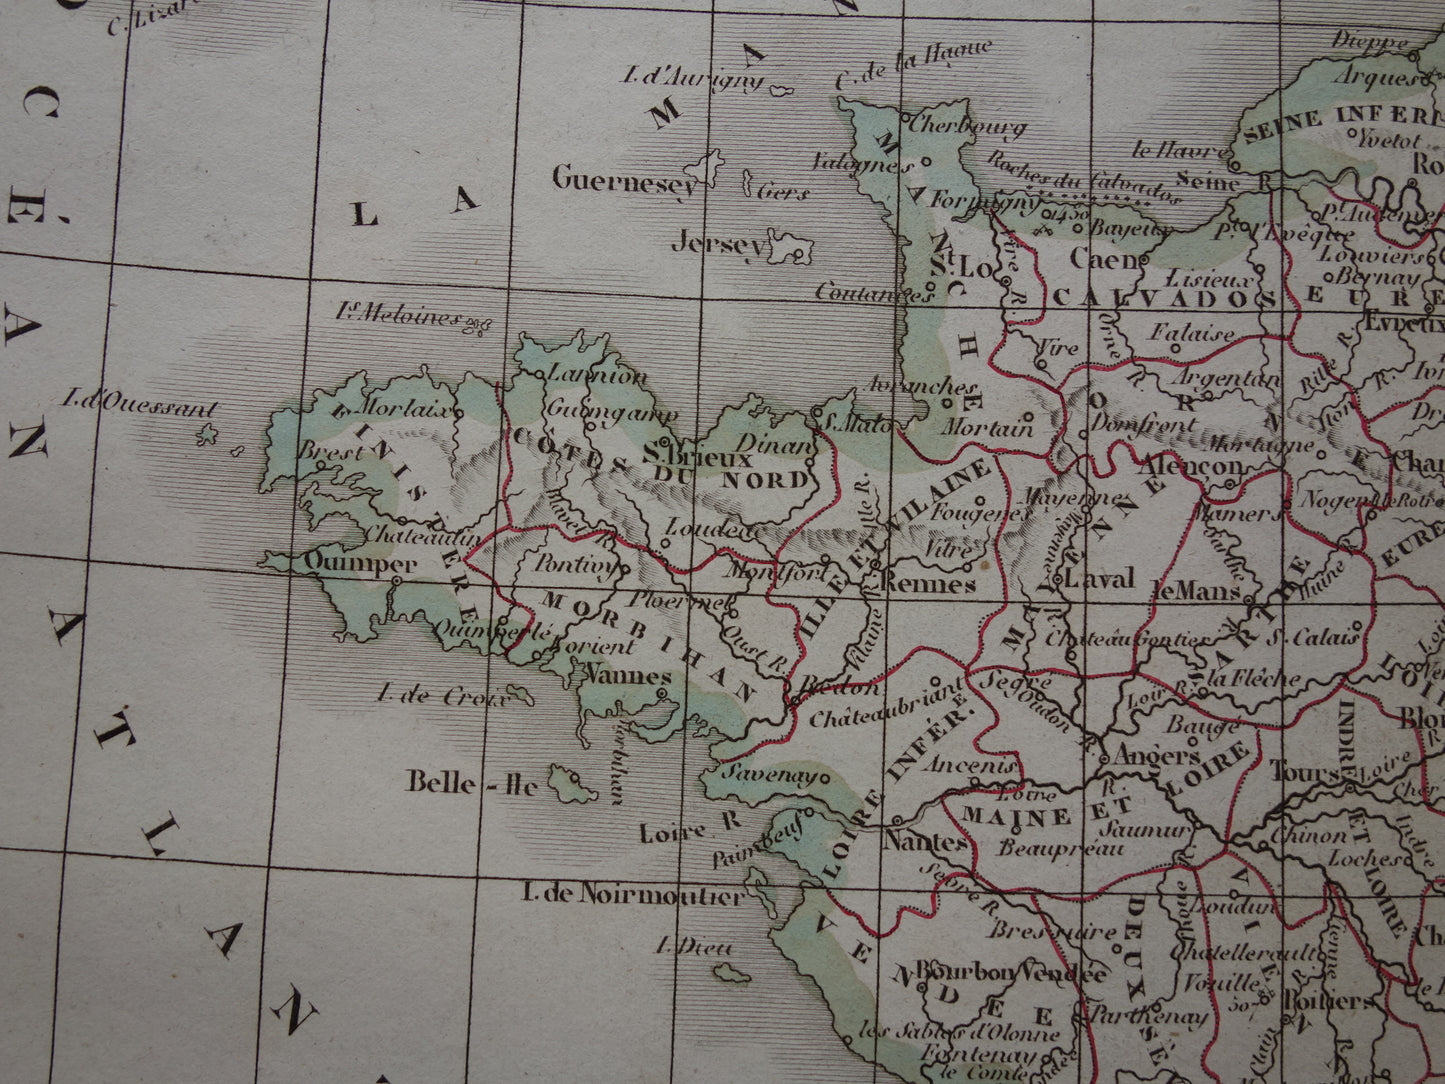 FRANKRIJK oude Franse kaart van Frankrijk uit 1833 originele antieke handgekleurde landkaart Franse departementen